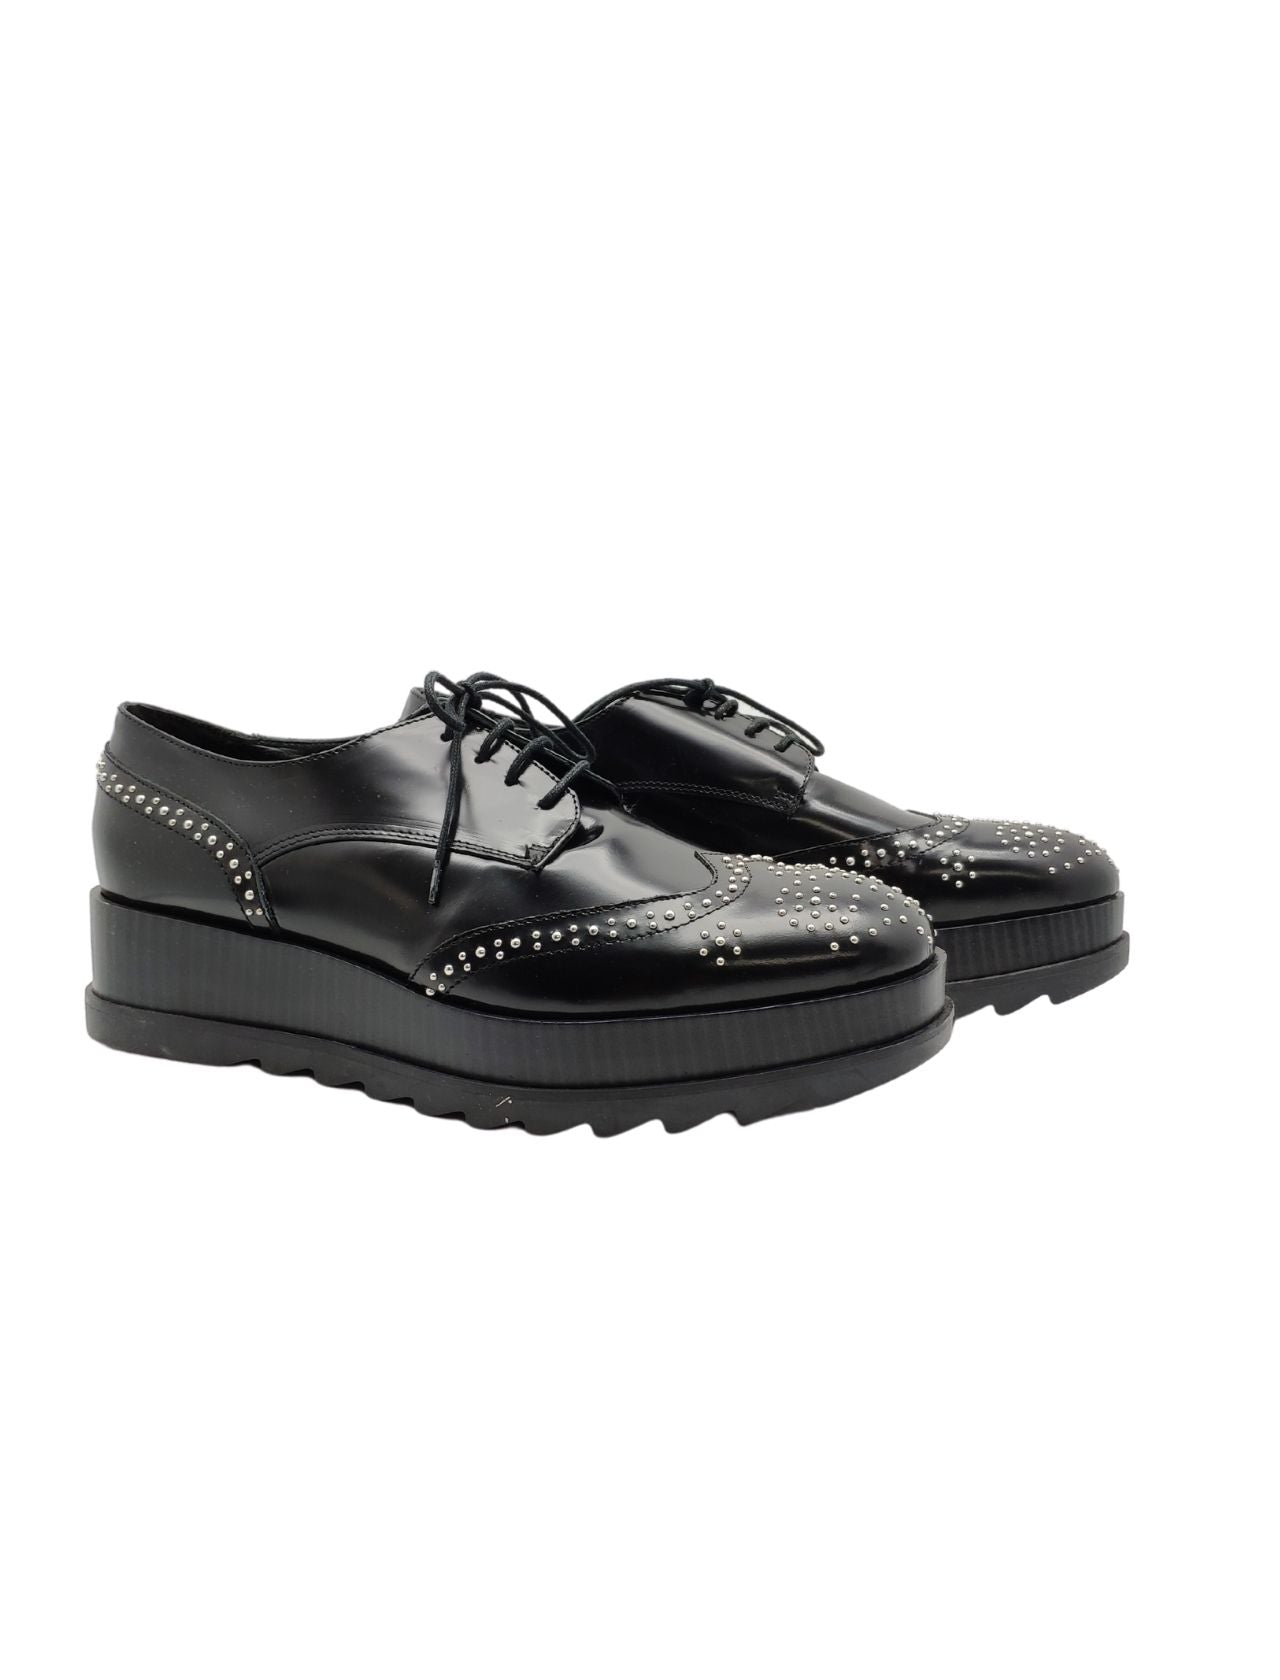 Chaussures à lacets pour femmes en cuir noir avec clous et compensées